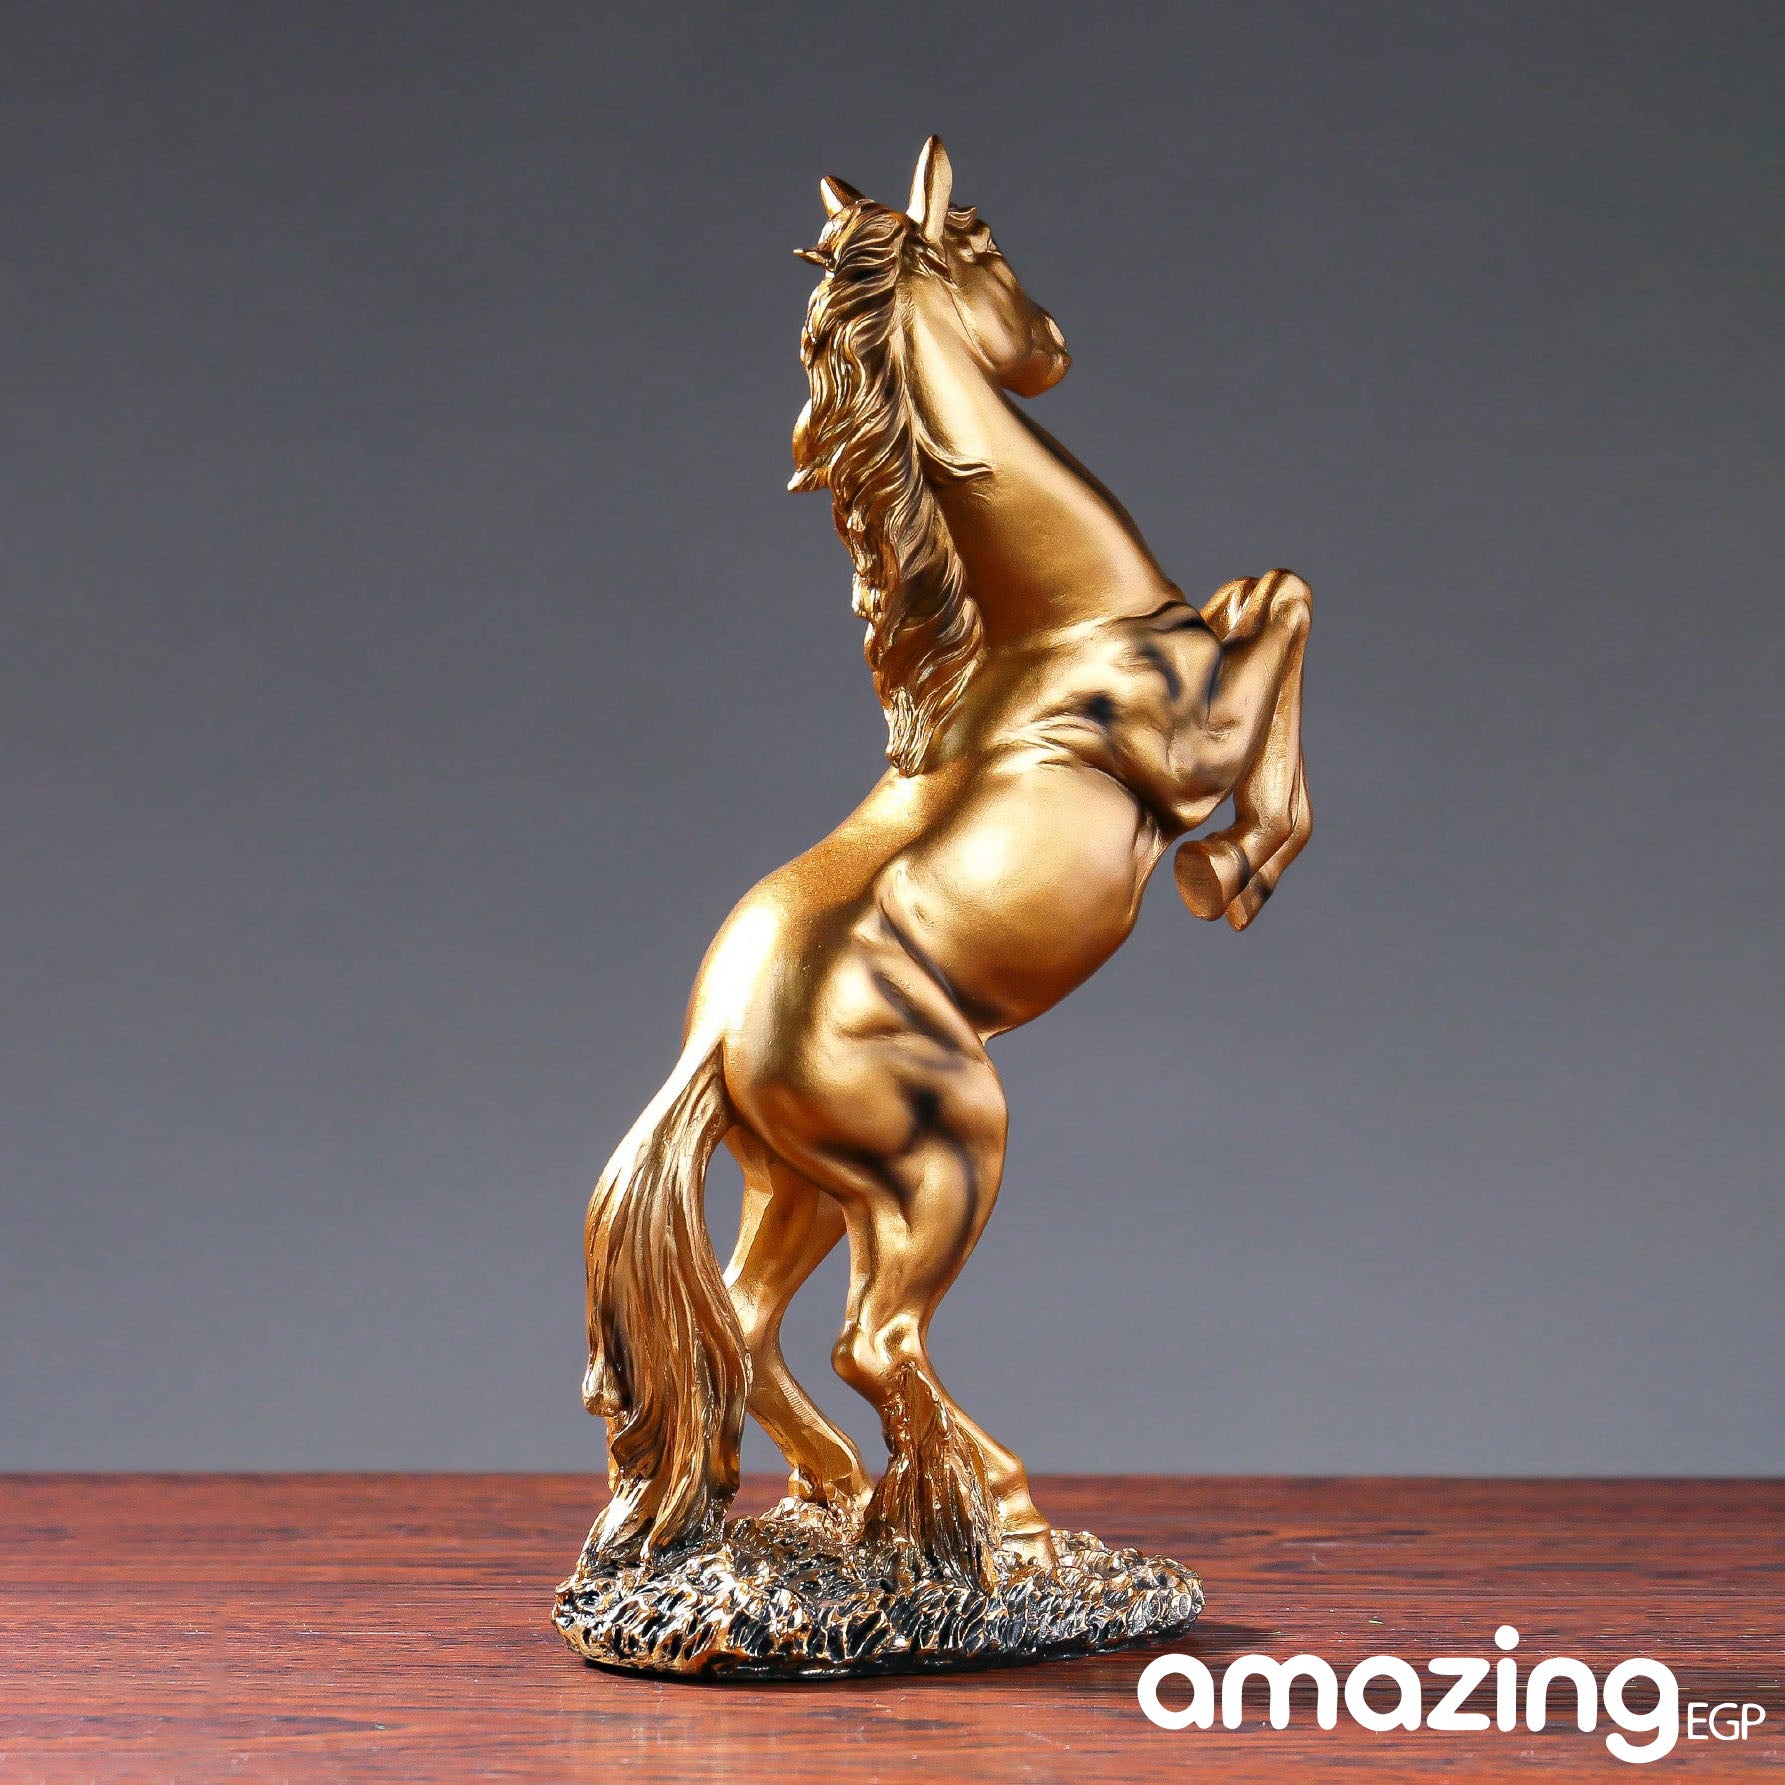 حصان قائم من الراتنج بارتفاع 30.5 سم، تمثال فني على شكل حصان لتزيين المنزل والمكتب ورف الكتب وخزانة  (ذهبي)